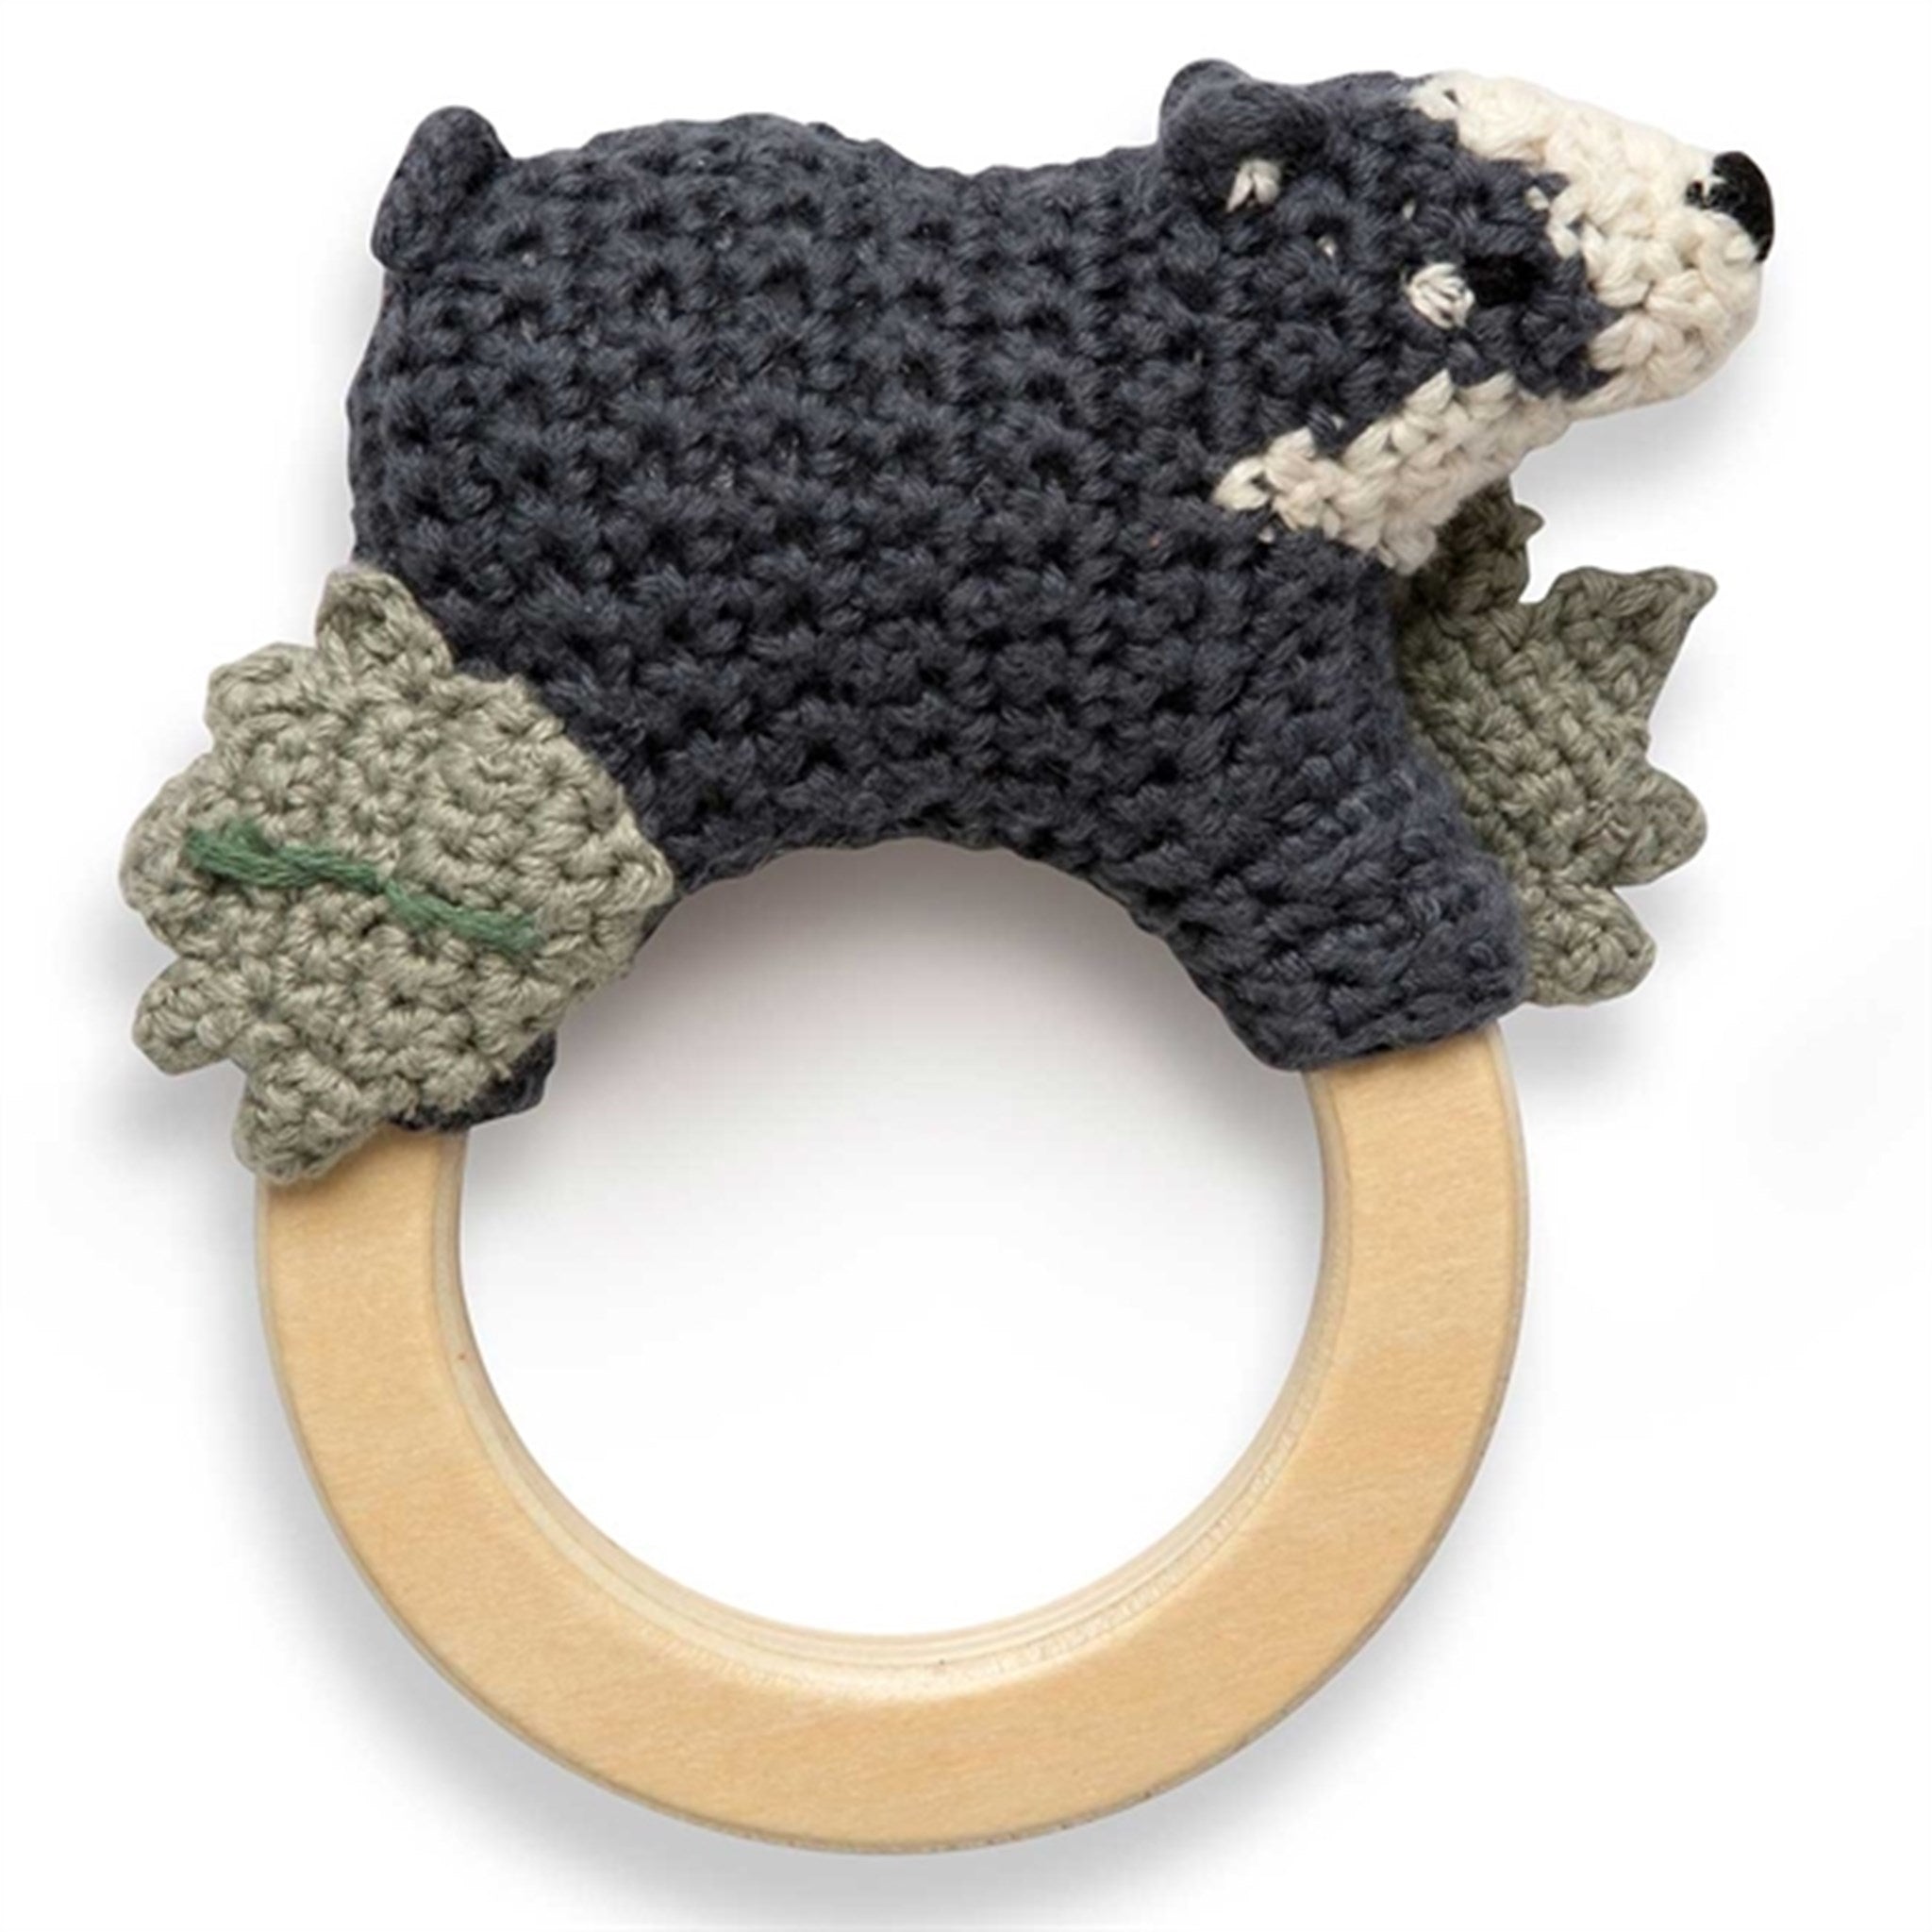 Sebra Crochet Rattle Shadow the Badger